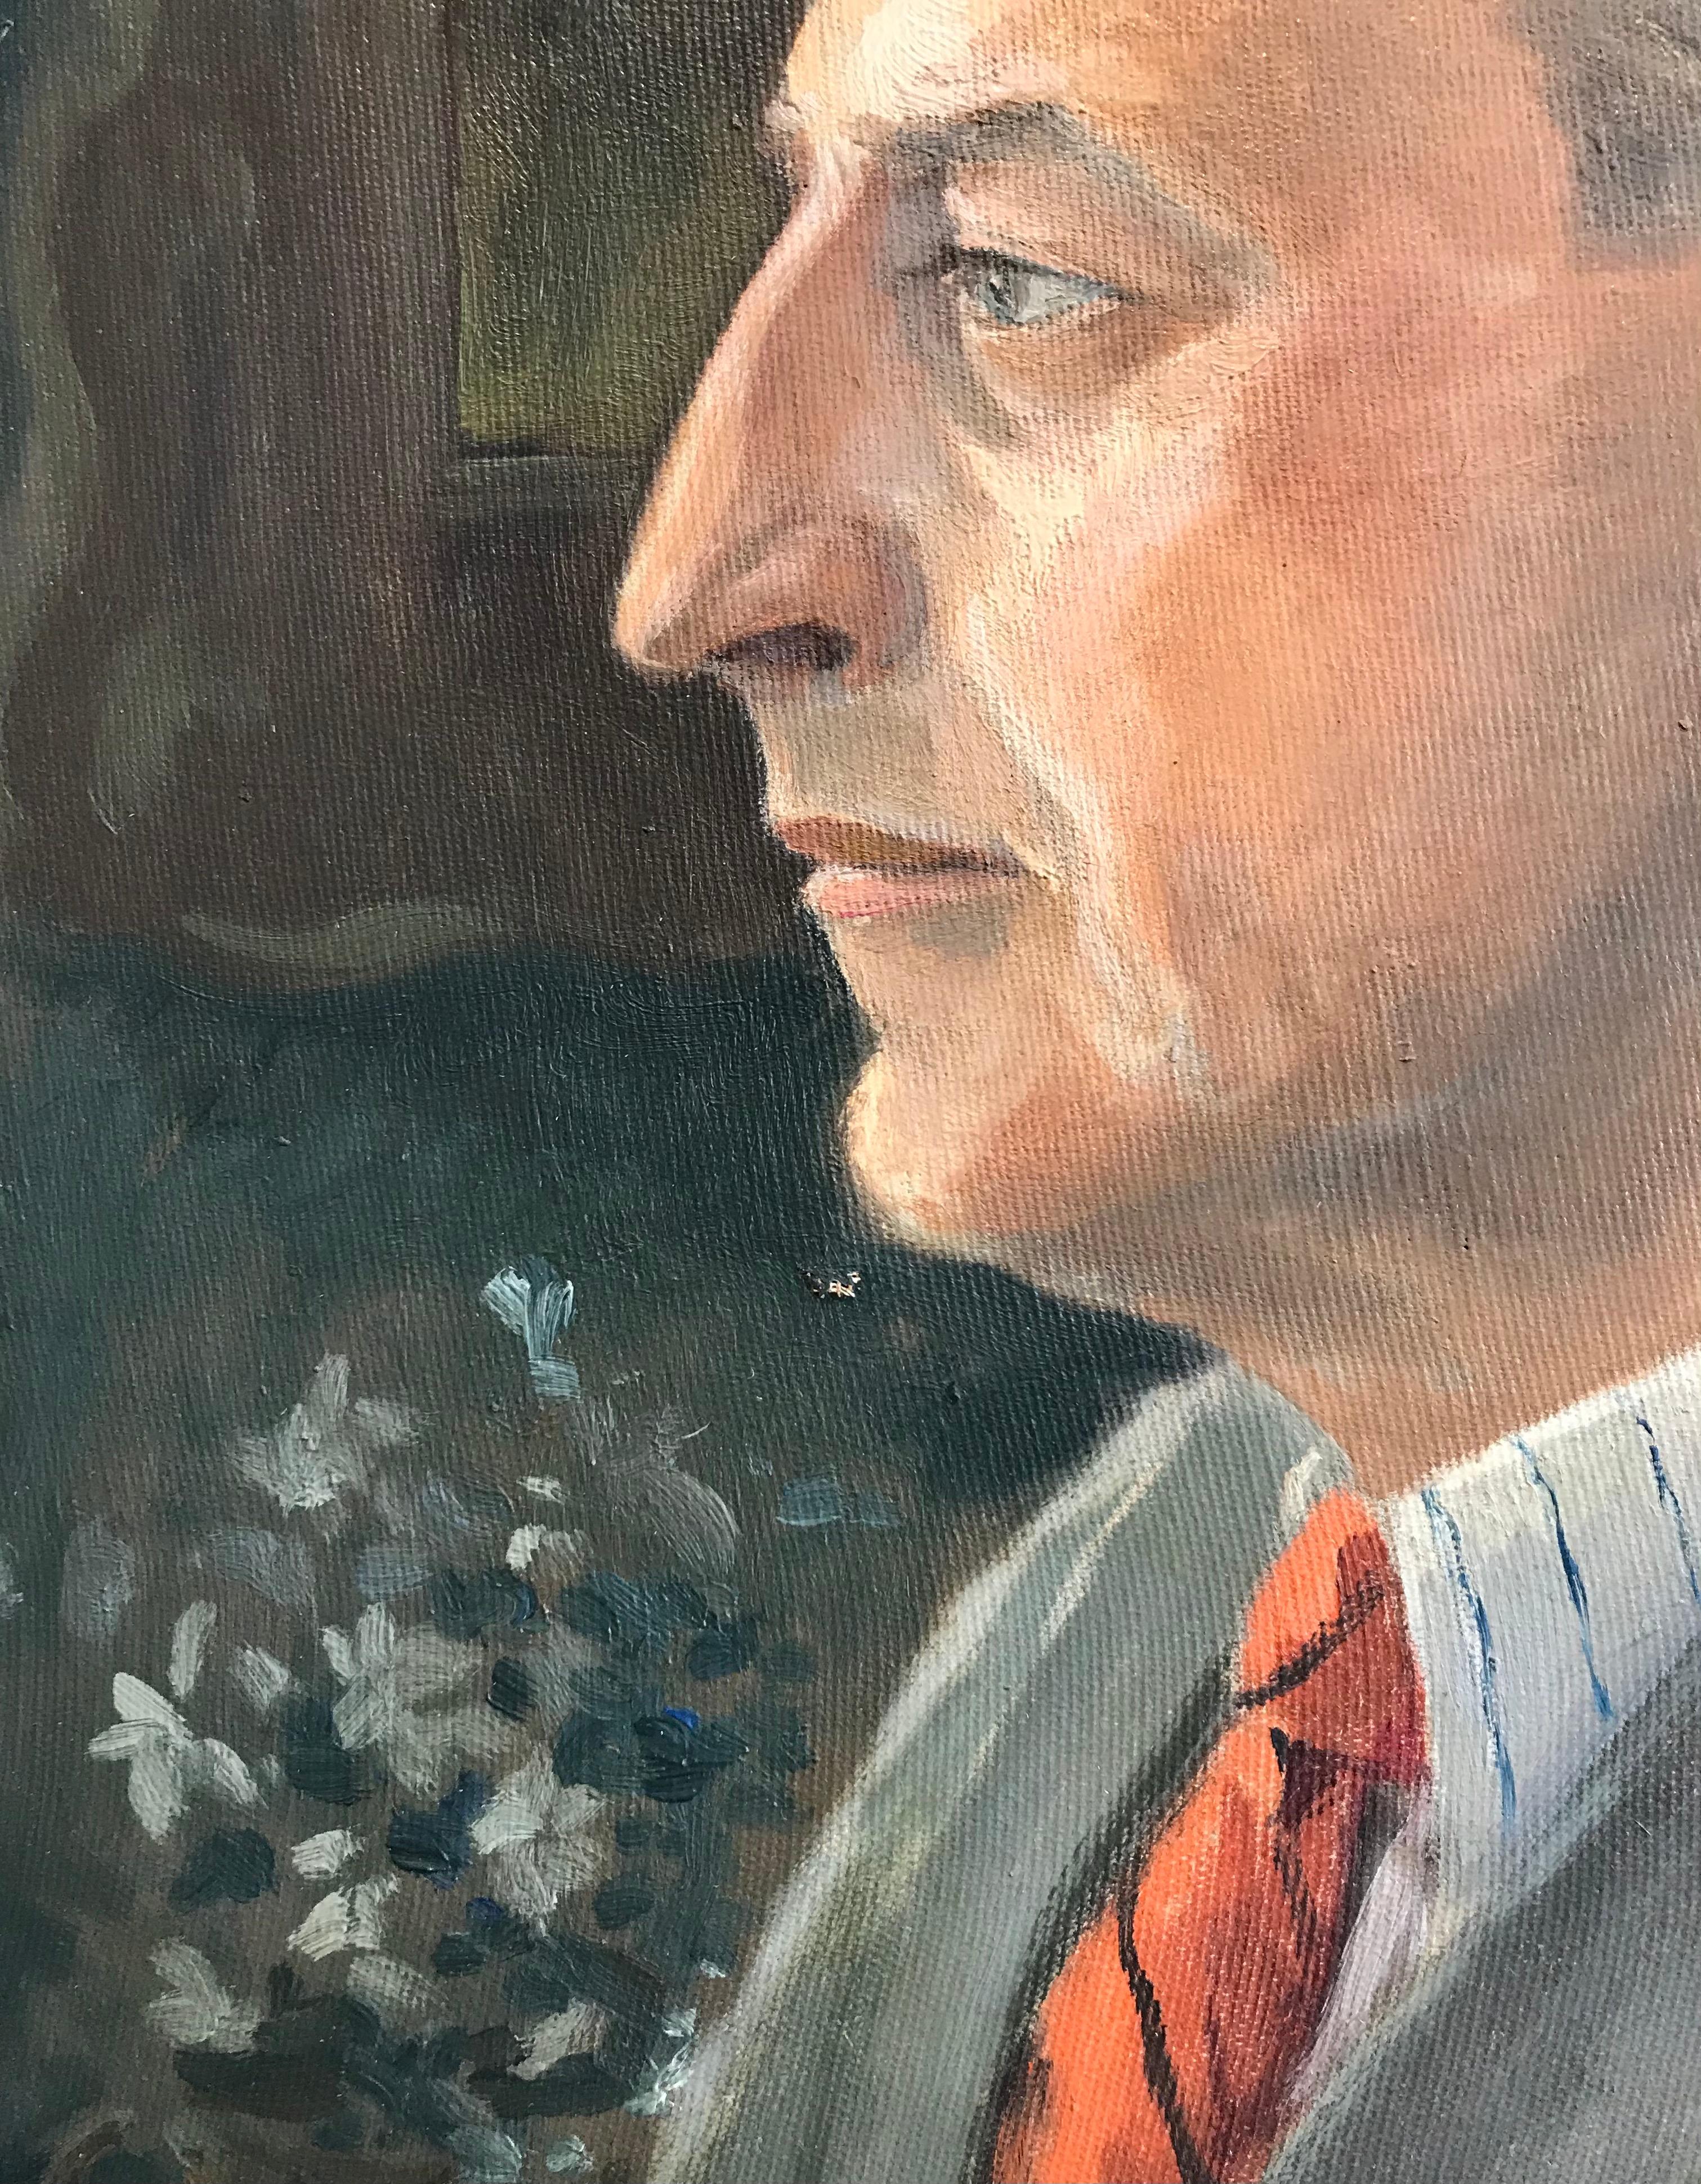 man in suit portrait